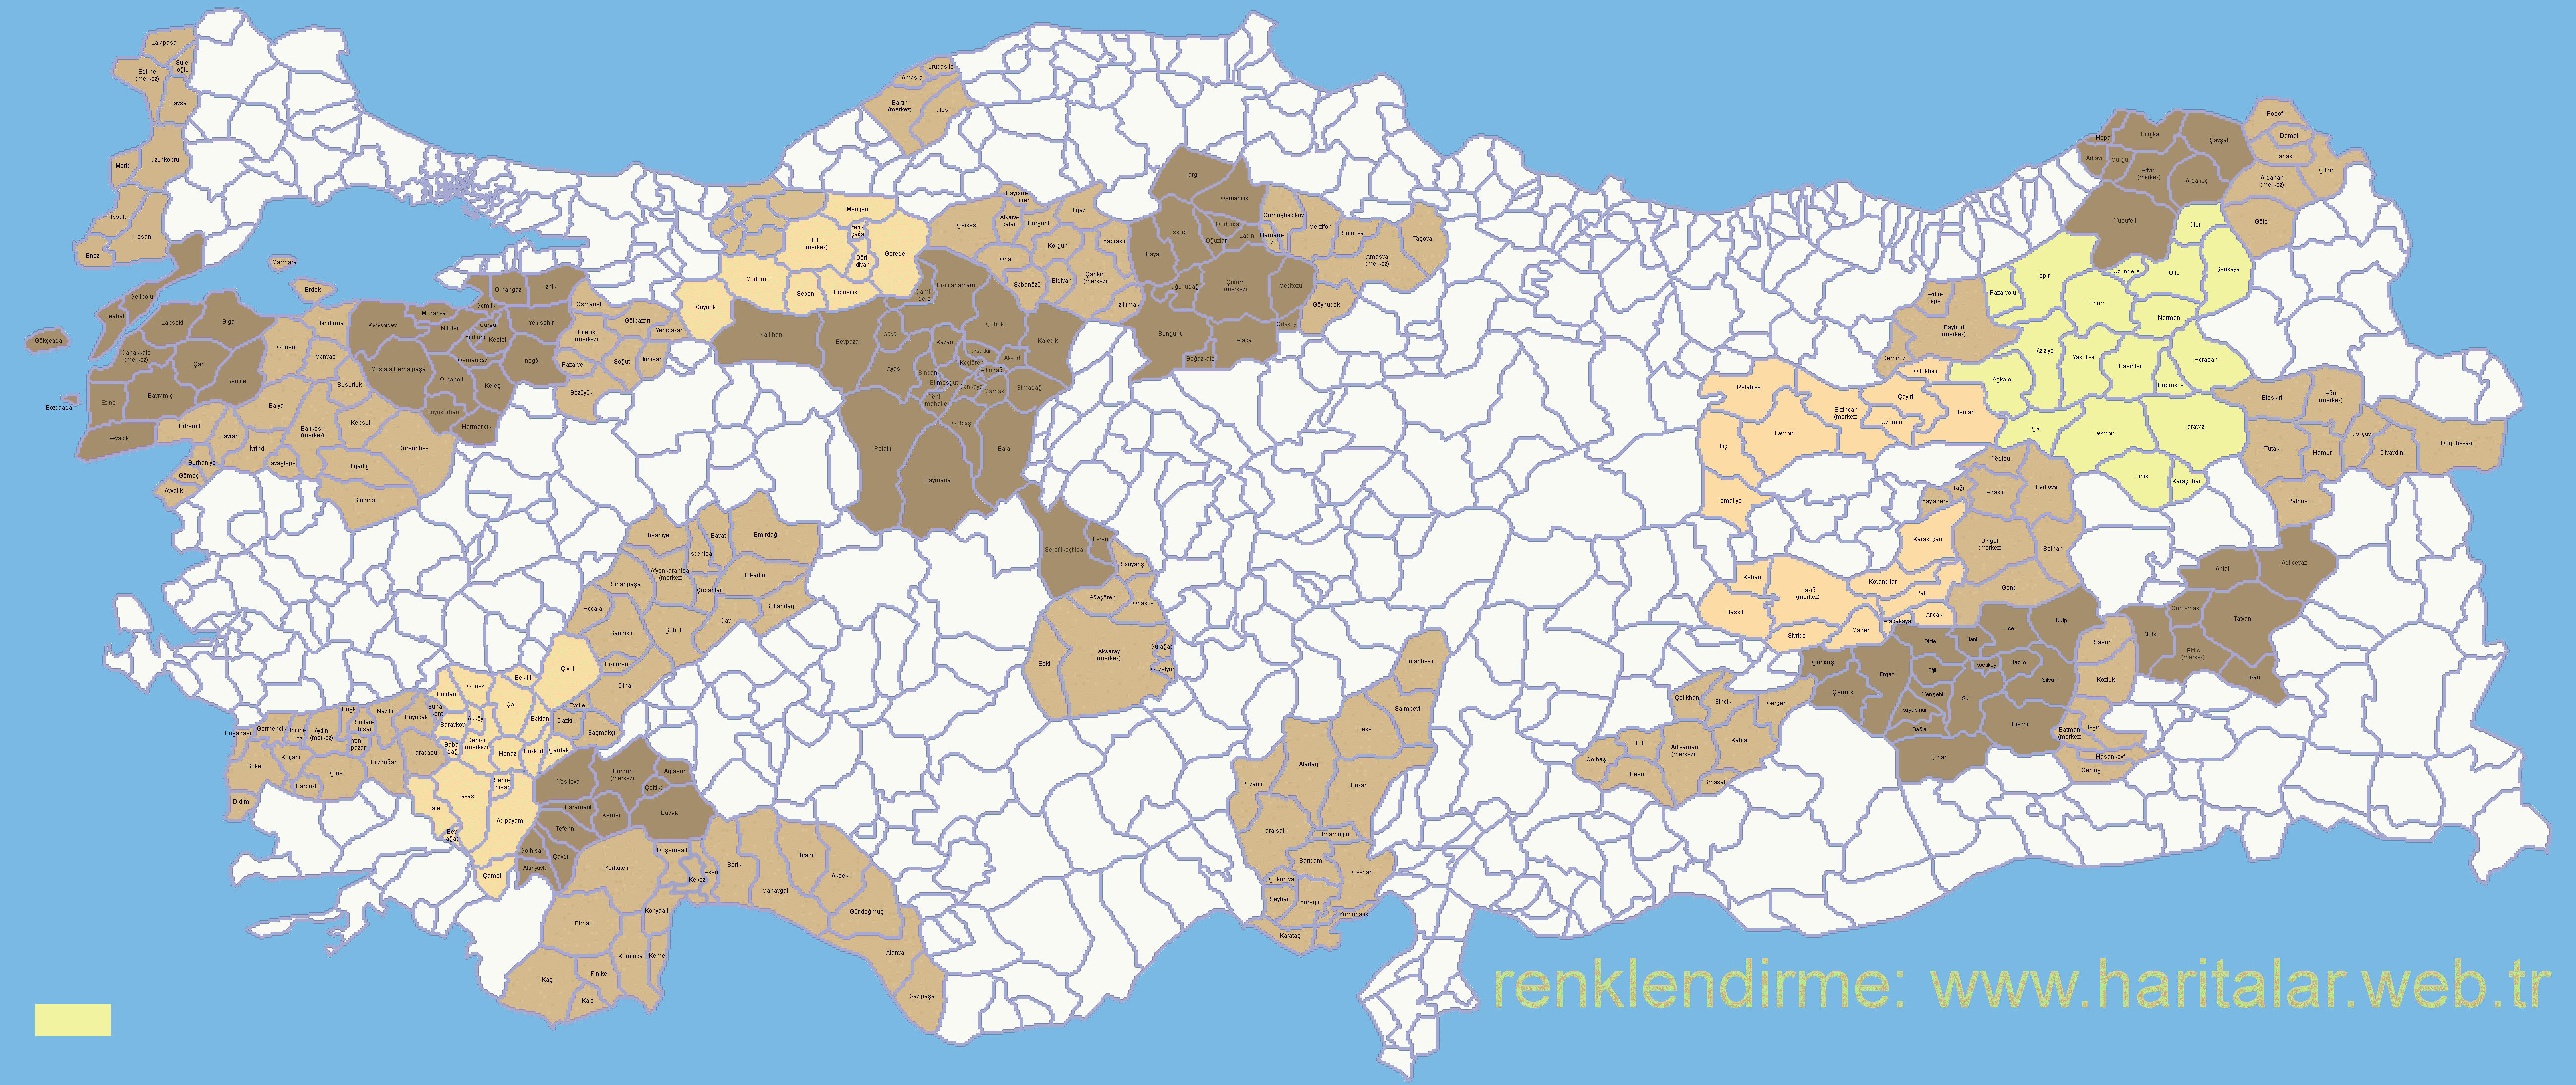  
Türkiye haritası ilçeler
         - 
Türkiye ilçeler haritası
 